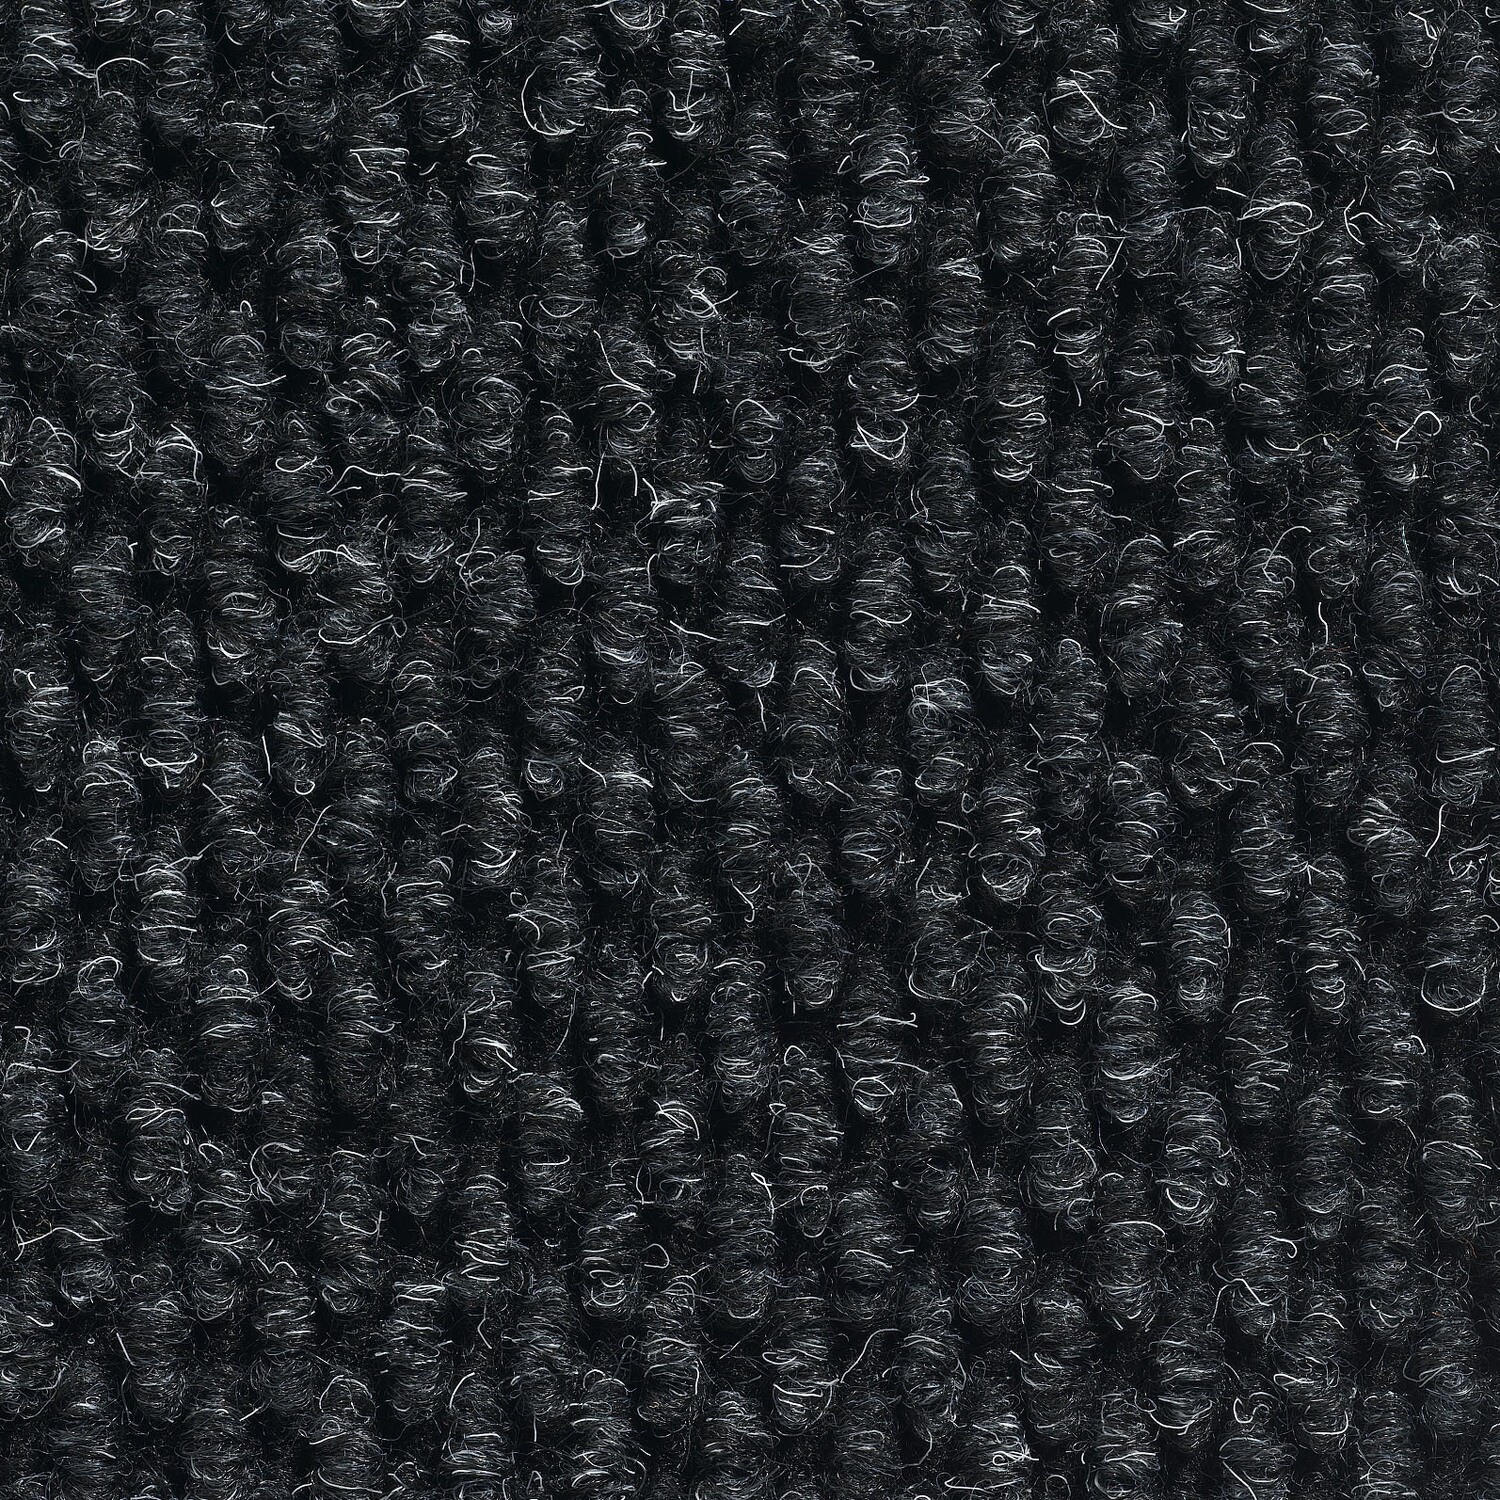 Calypso Heavy Duty Carpet tile (50cm x 50cm) Fr. 49.90 /m2